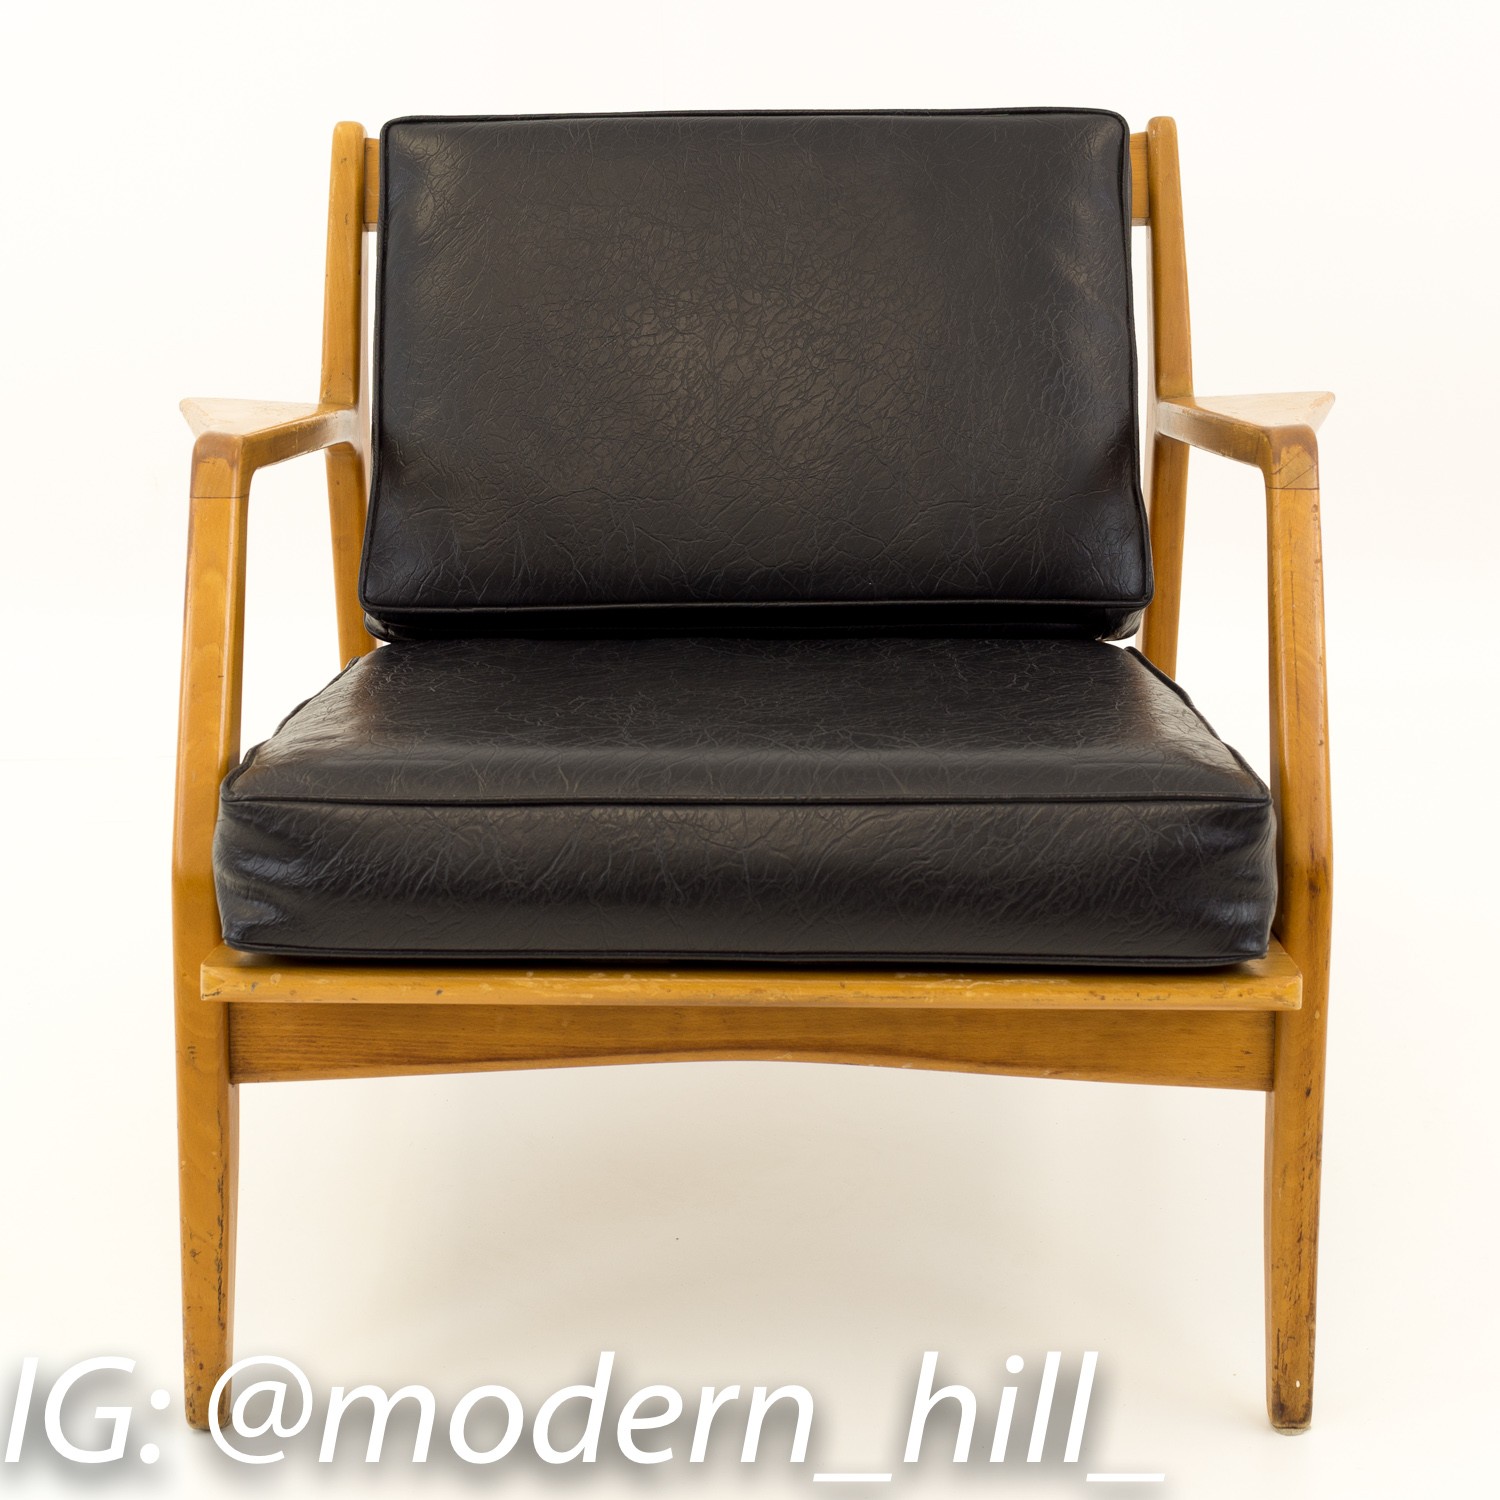 Kofod Larsen for Selig Mid Century Modern Lounge Chair - Black